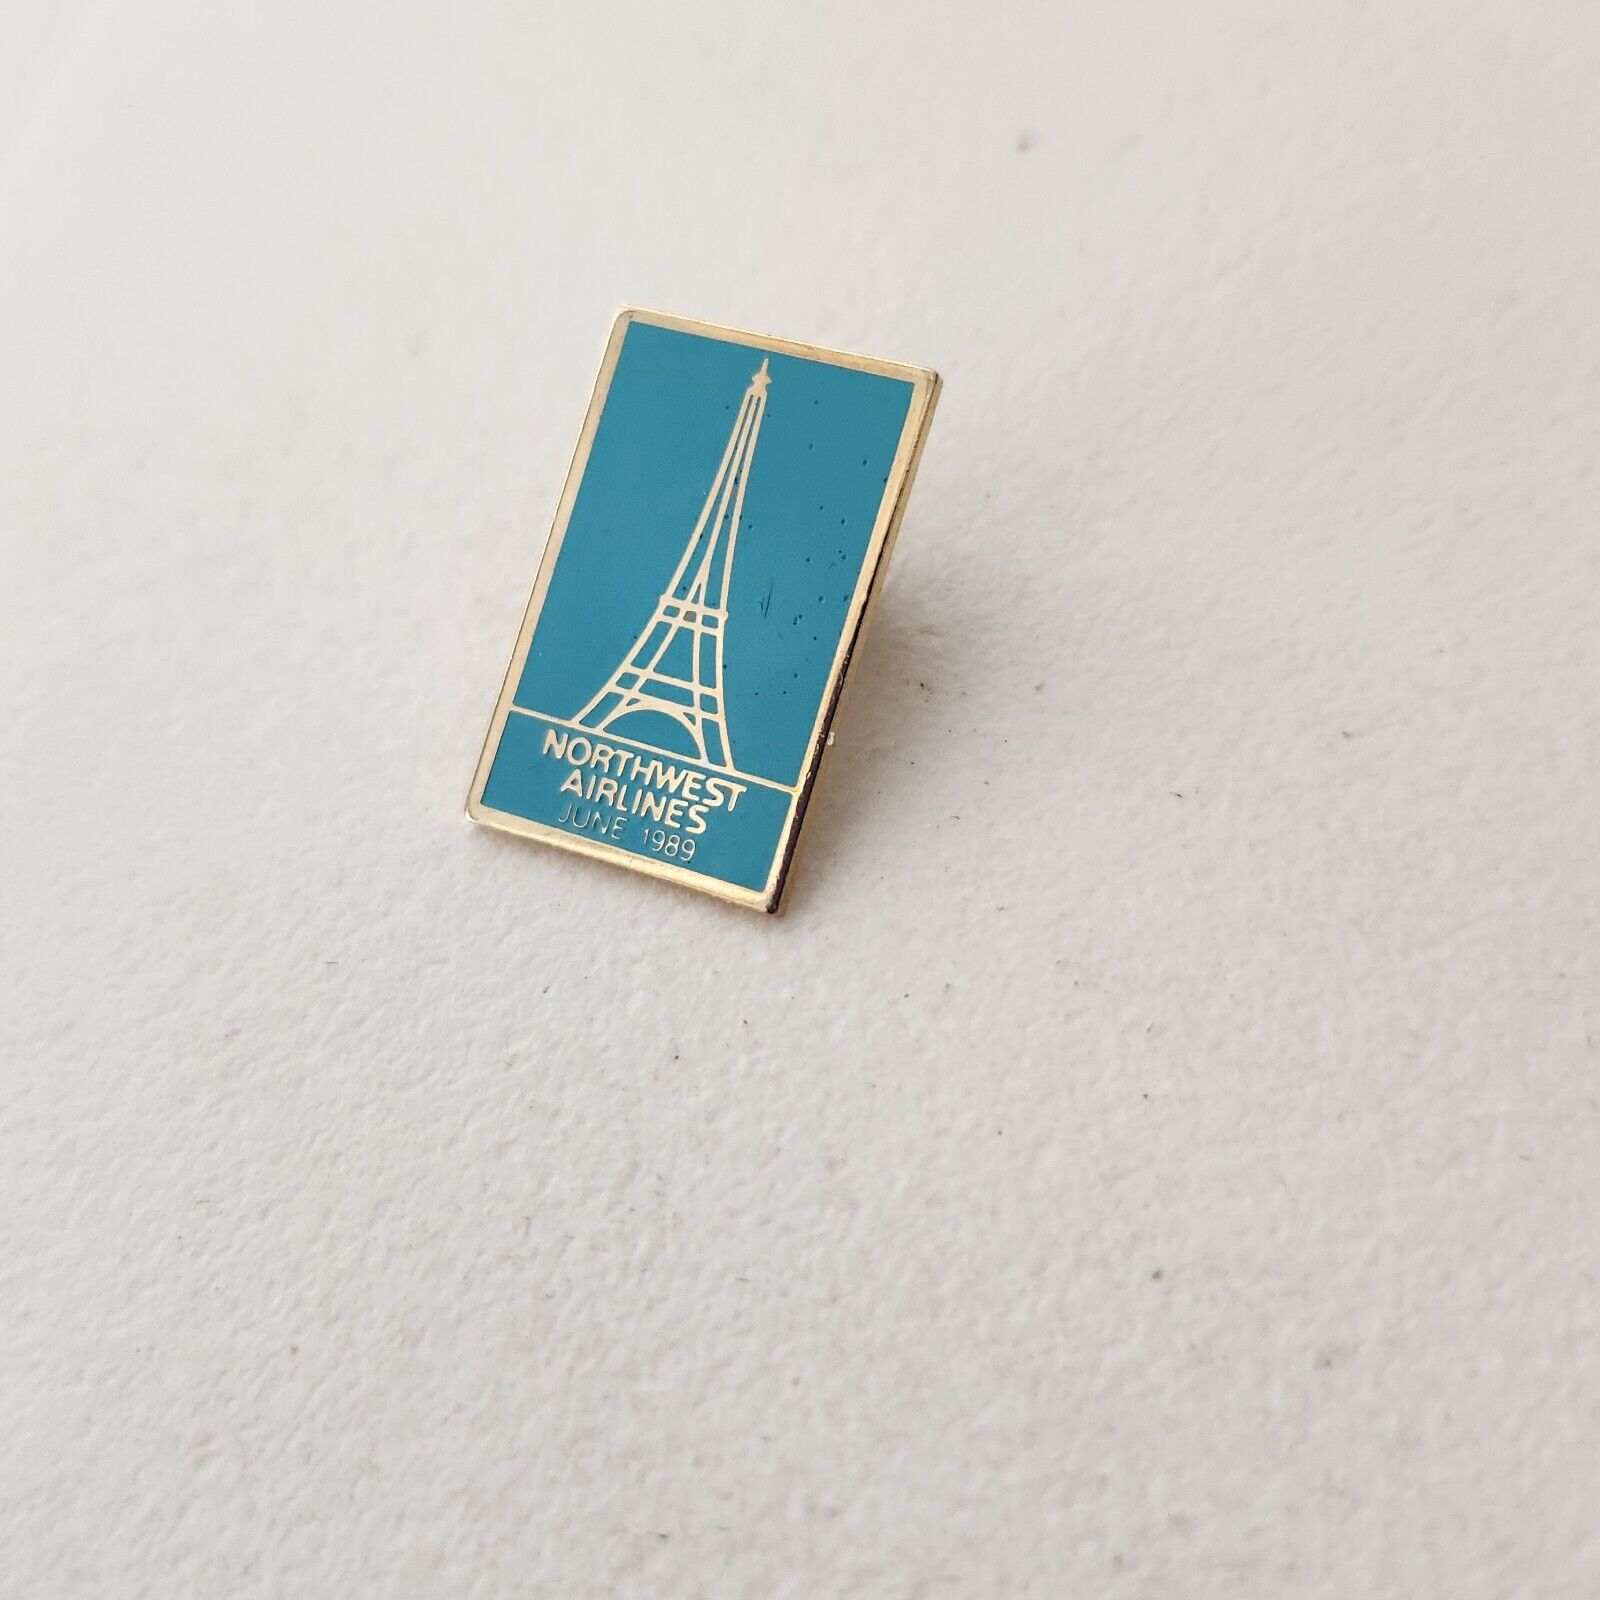 Northwest Airlines Lapel Pin Vintage 1989 Eiffel Tower Paris France